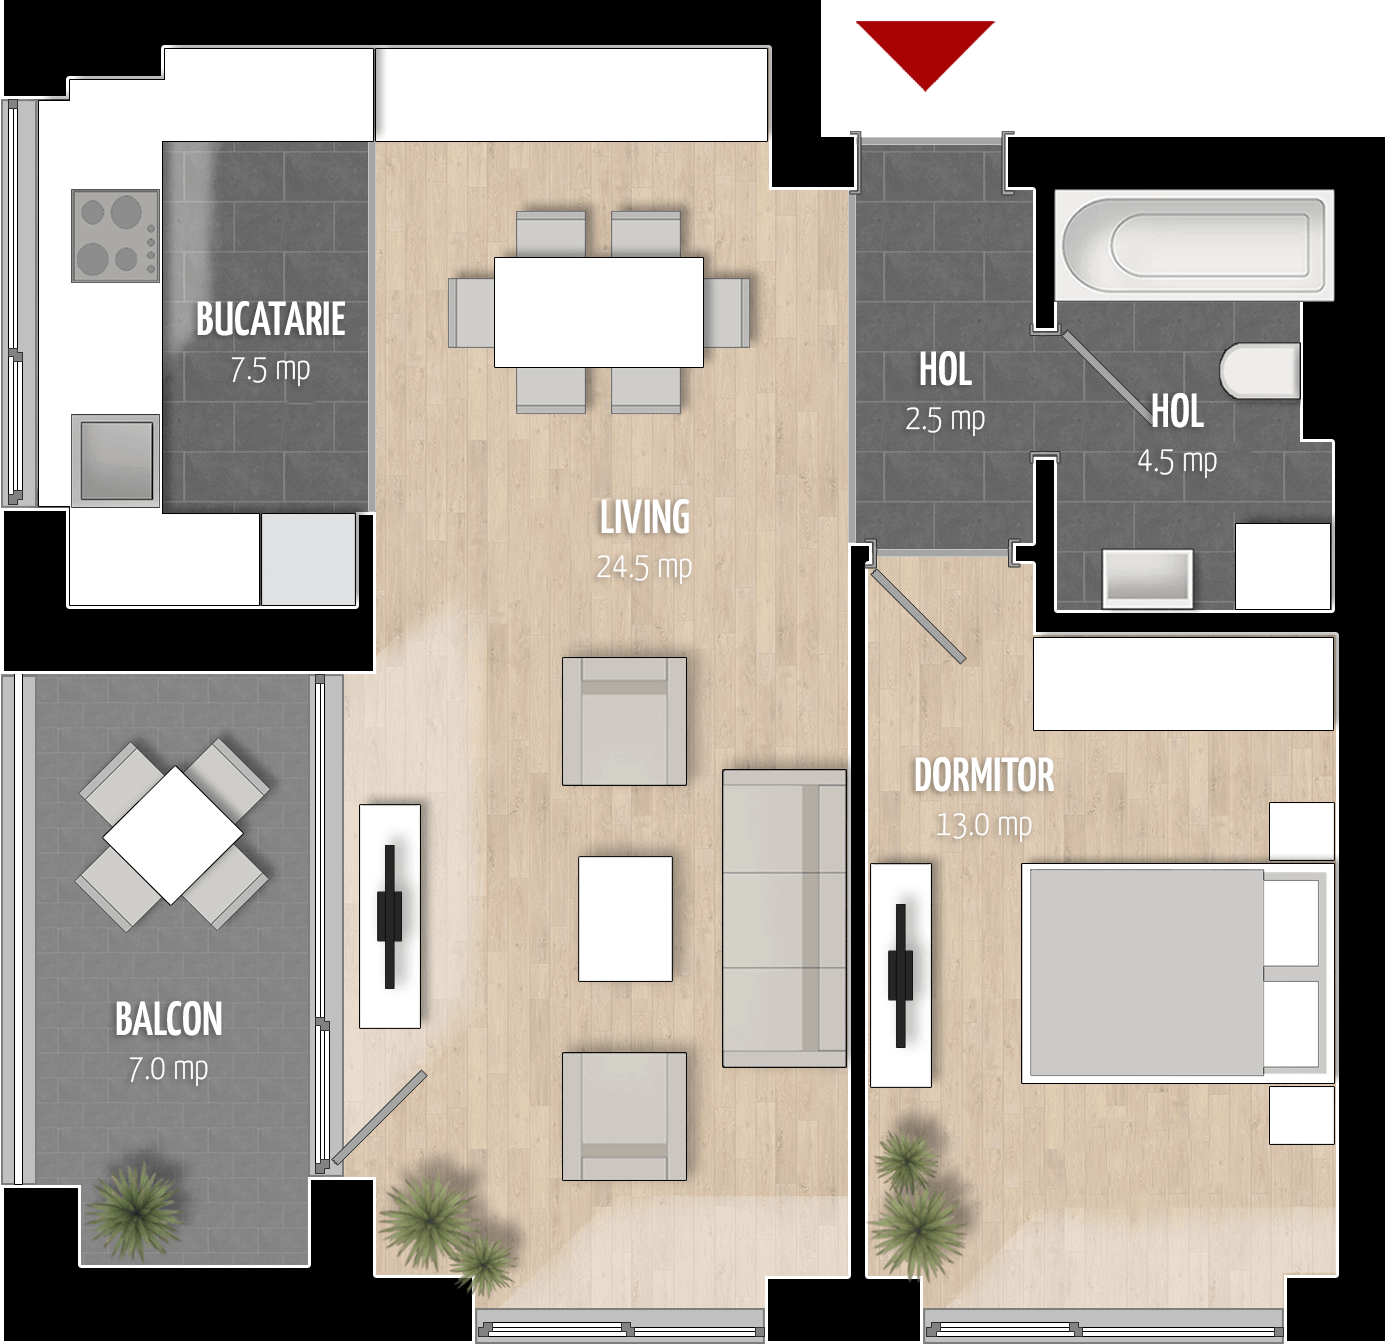  Apartament Tip 2B cu 2 camere 